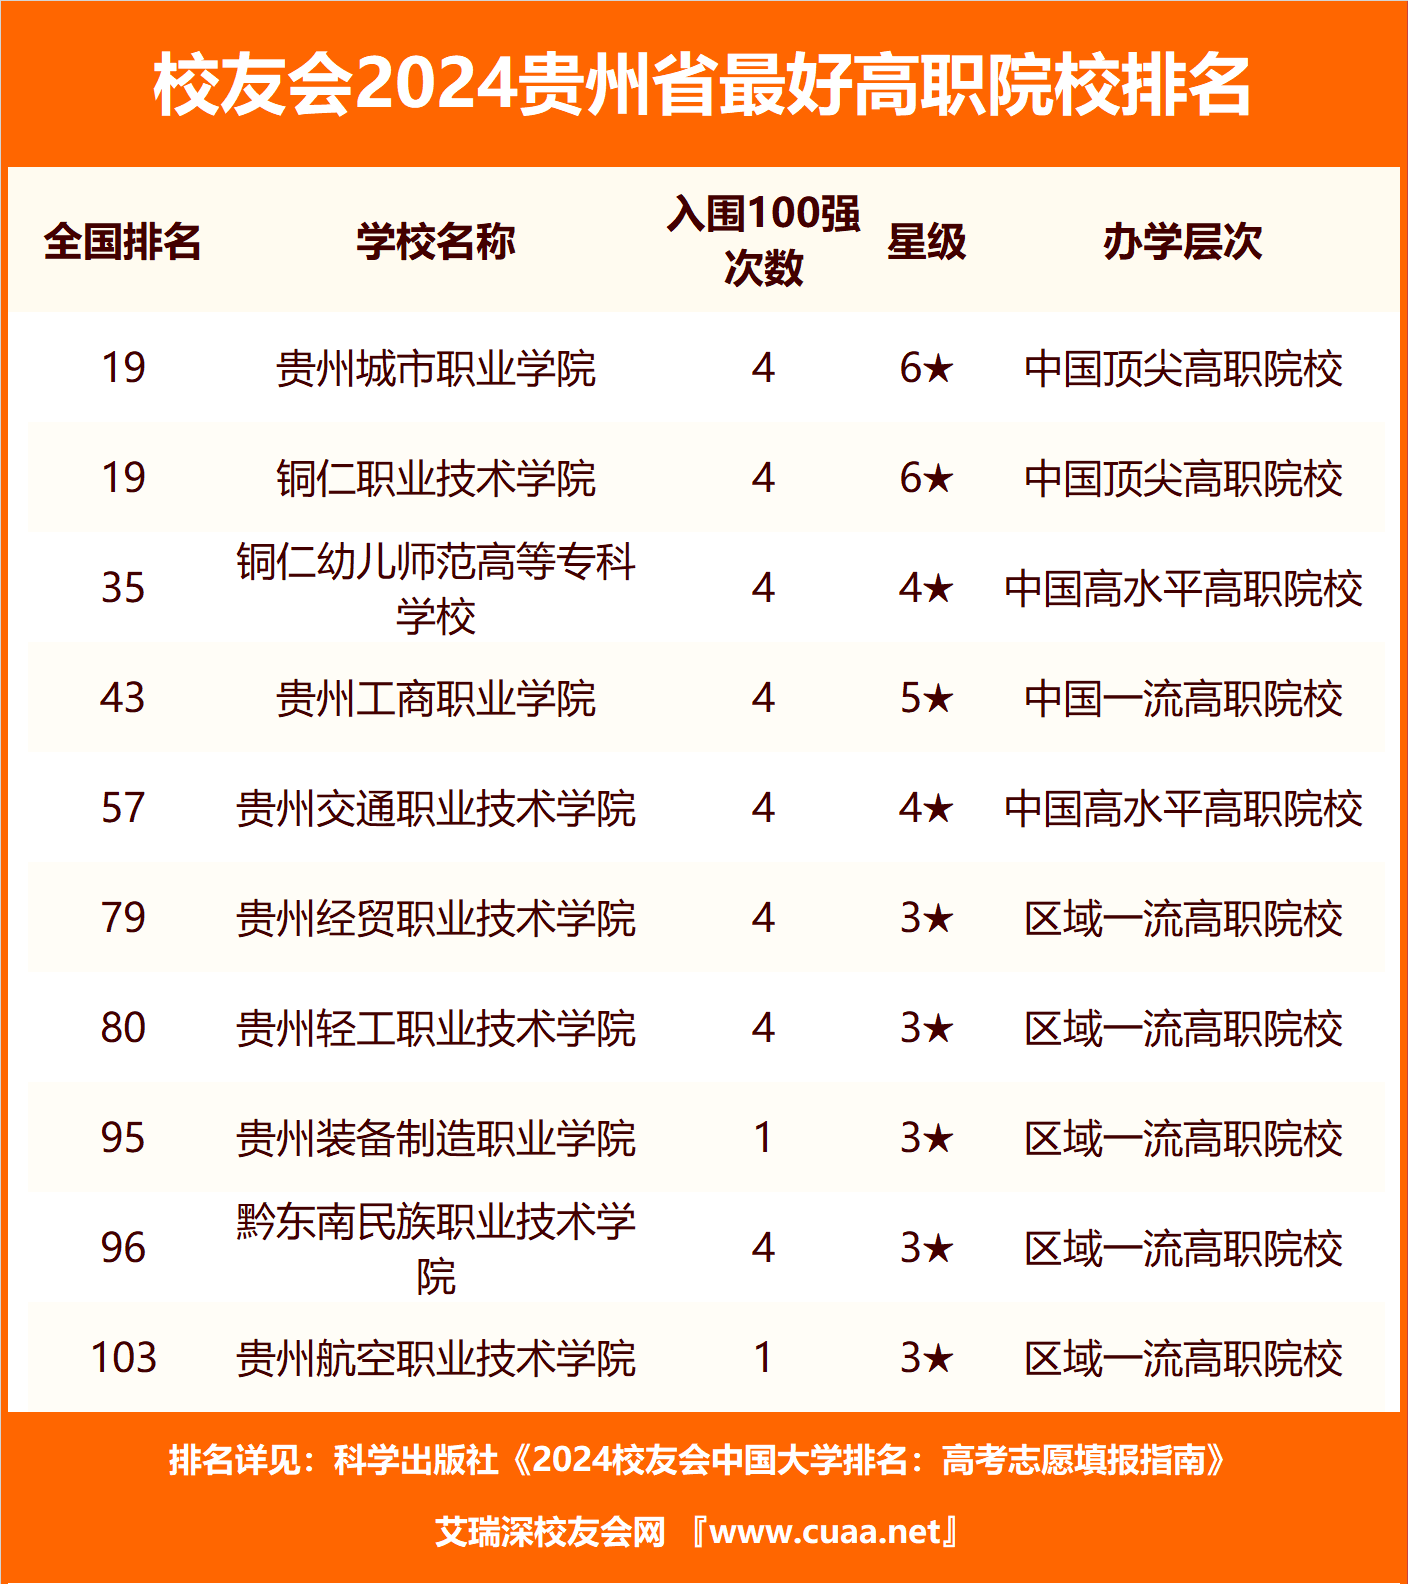 贵州城市职业学院,铜仁职业技术学院水平最高,2021